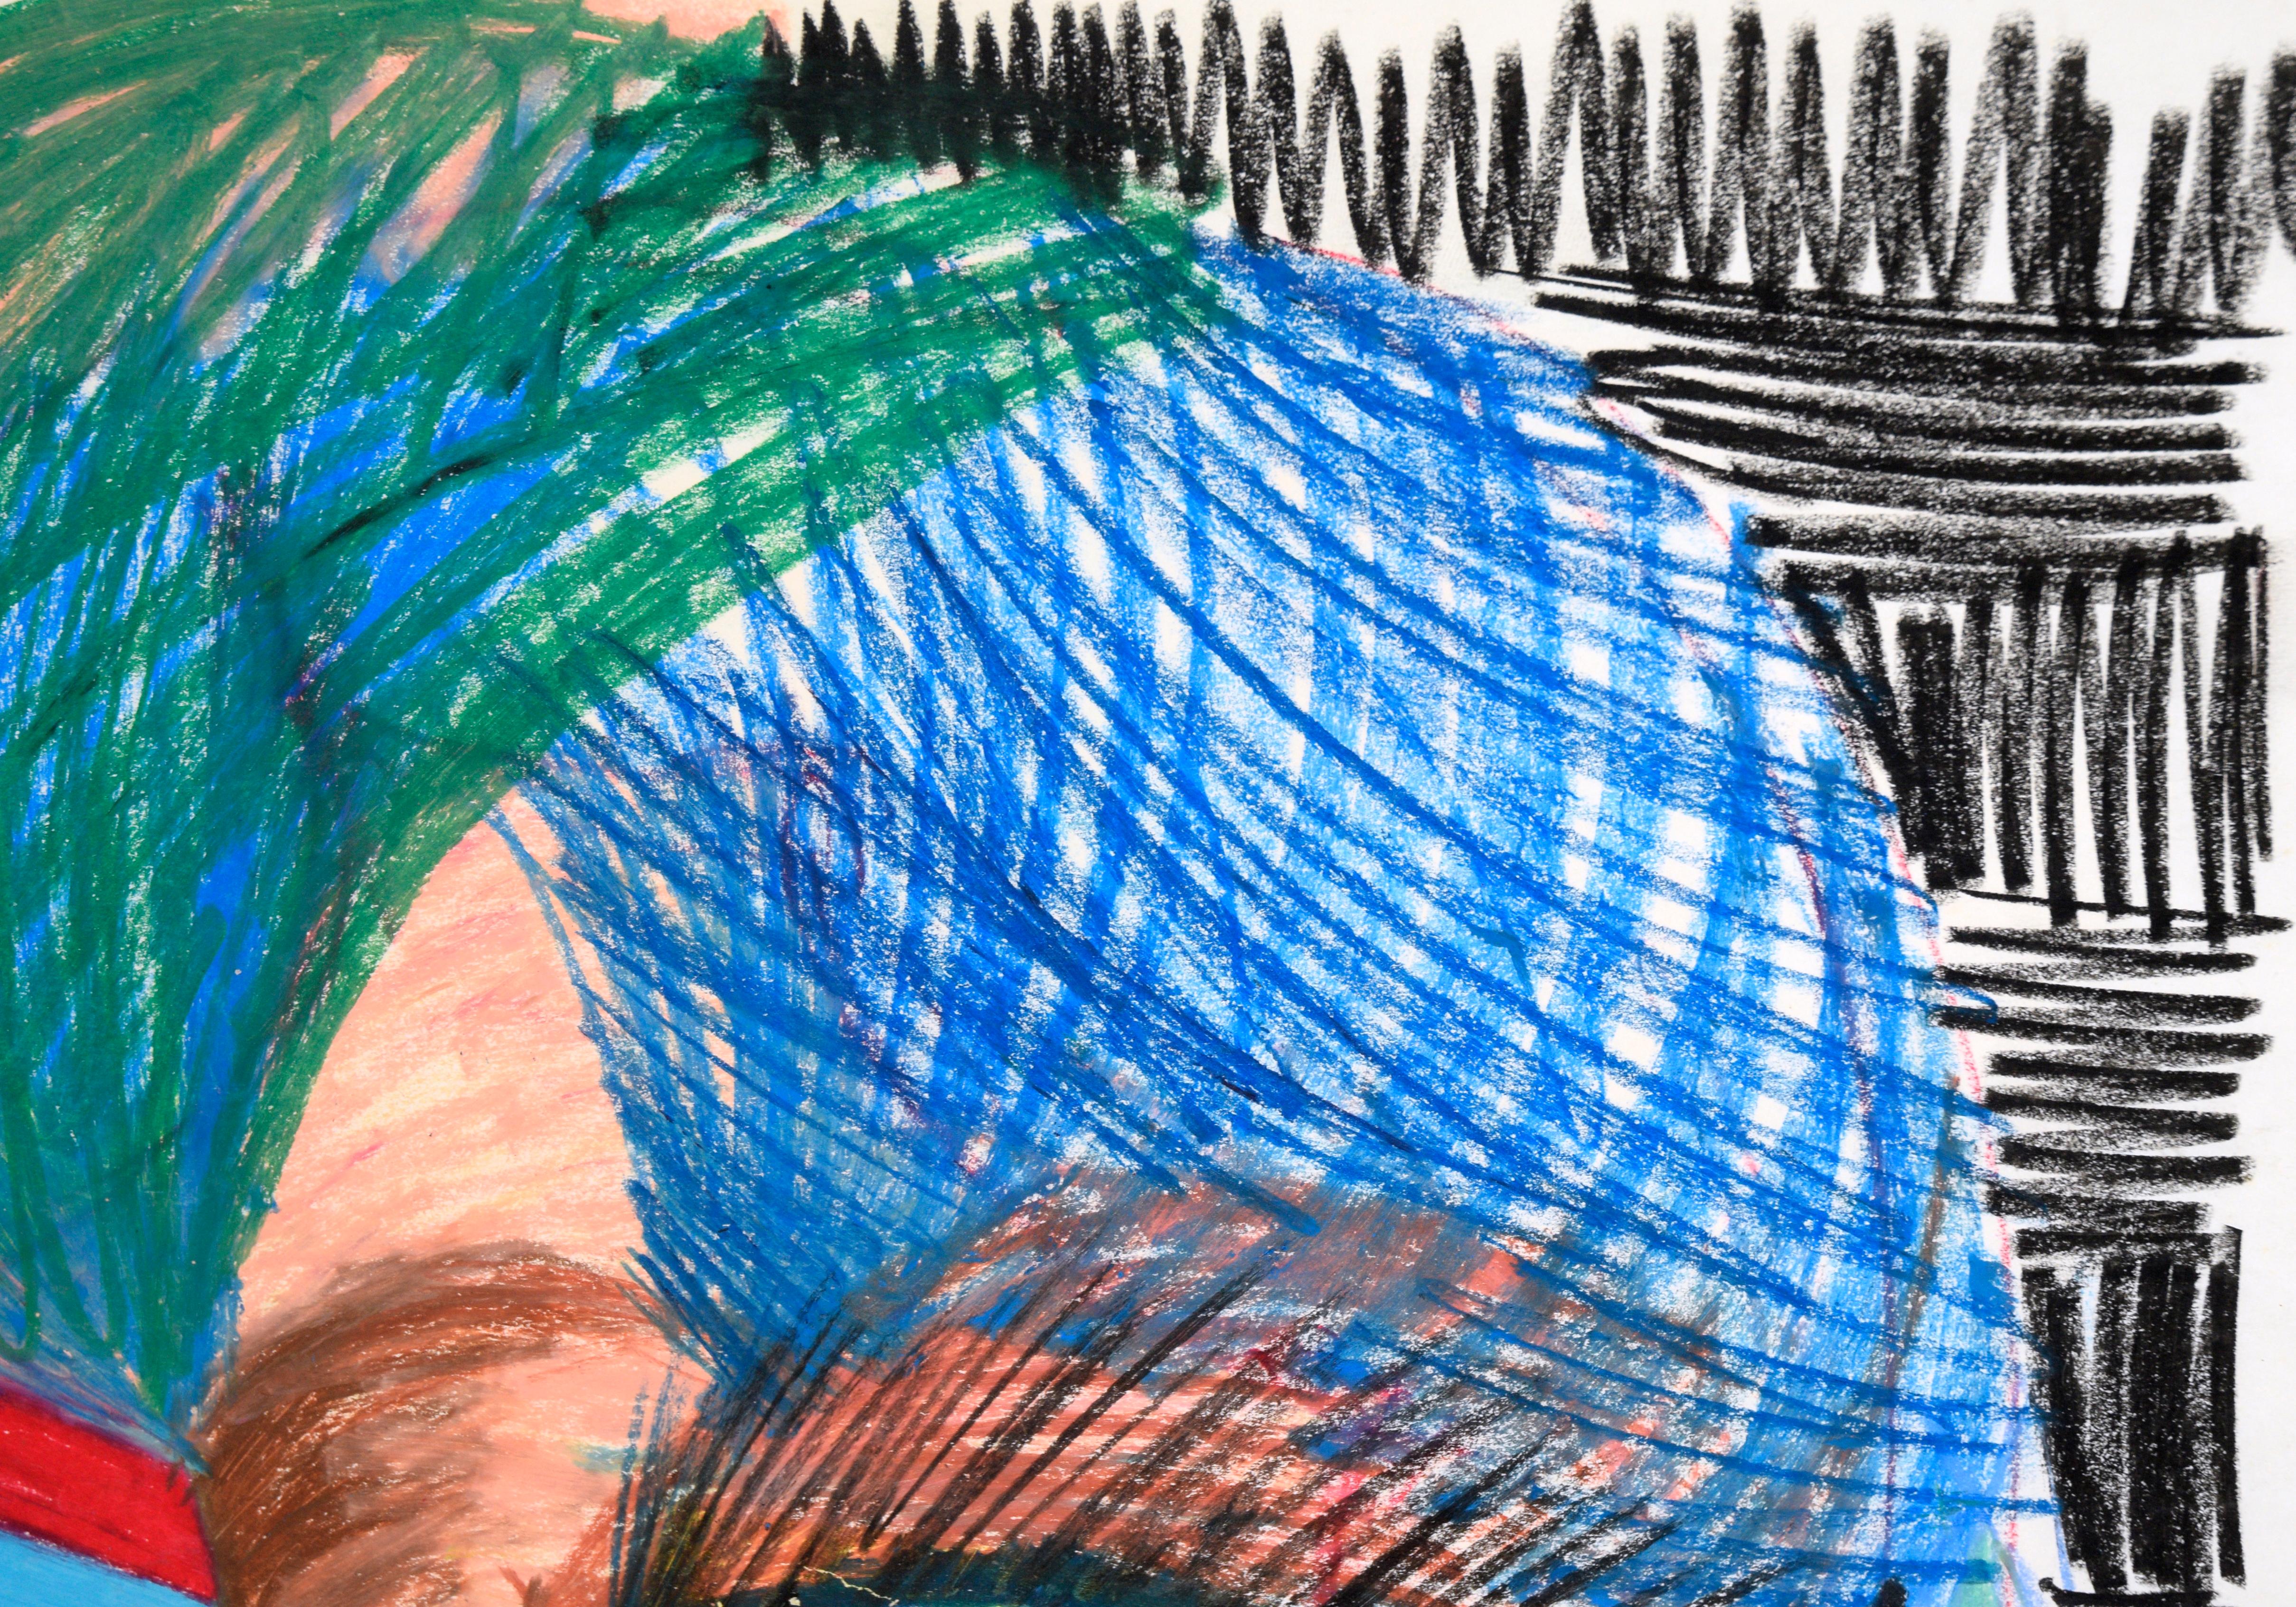 Leuchtend farbiges abstraktes Porträt von Michael William Eggleston (Amerikaner, 20. Jahrhundert). Eine abstrahierte Figur ist mit einem katzenähnlichen Auge und scharfen Zähnen abgebildet, aber die genauen Merkmale sind nicht zu erkennen. Die